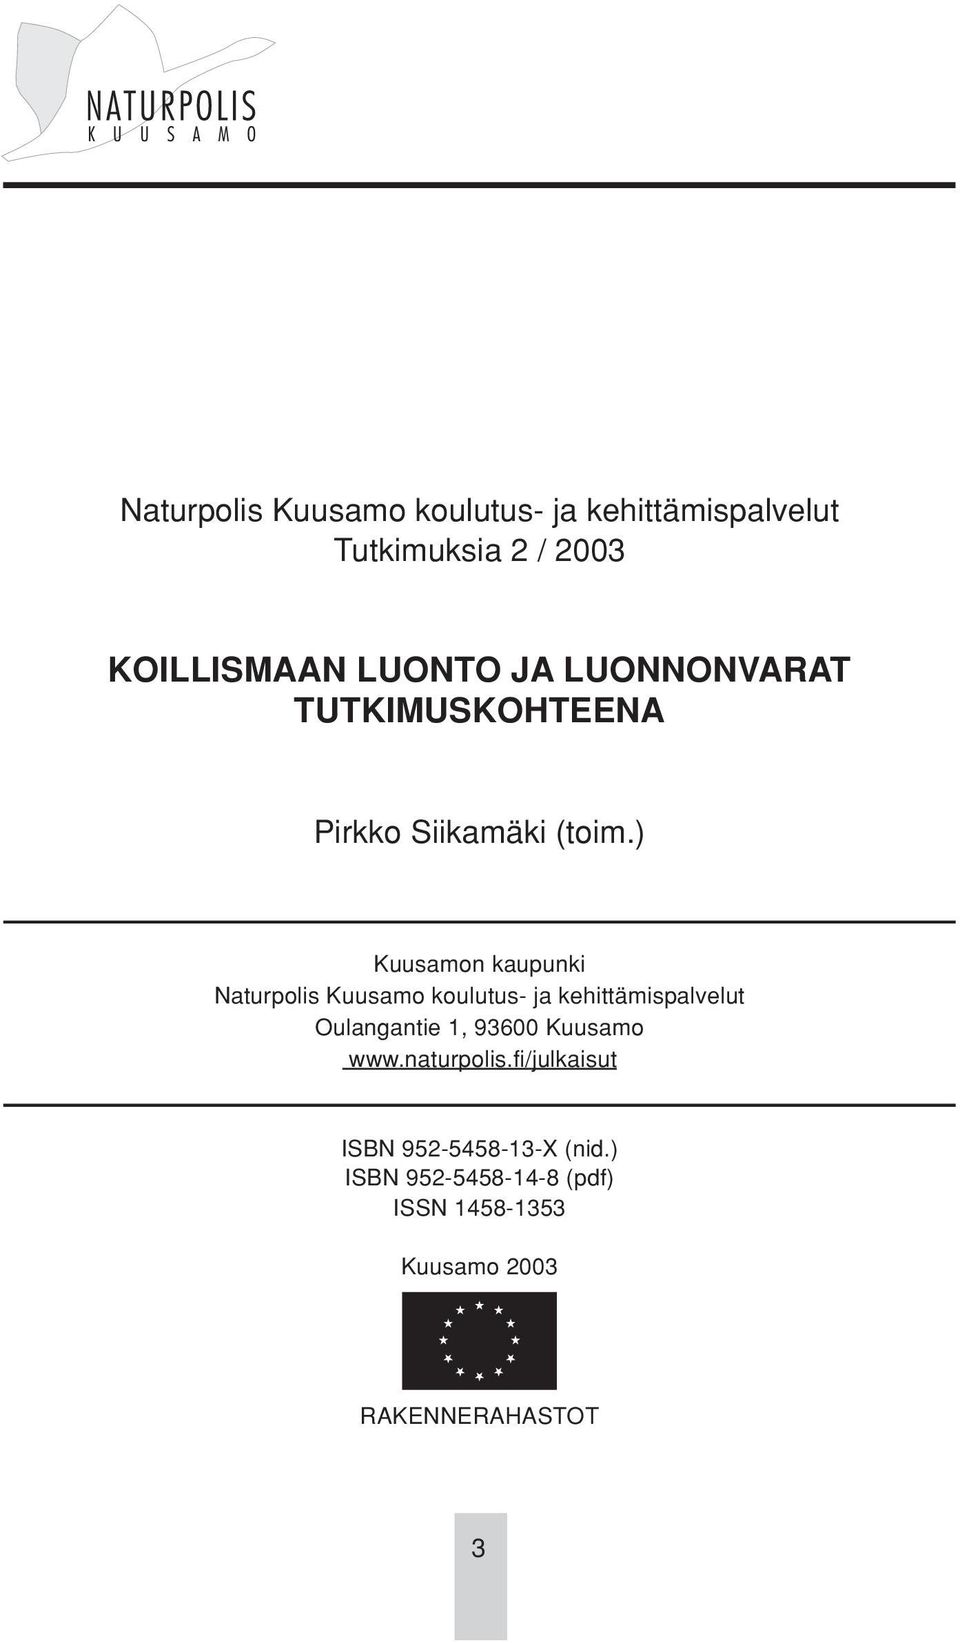 ) Kuusamon kaupunki Naturpolis Kuusamo koulutus- ja kehittämispalvelut Oulangantie 1, 93600